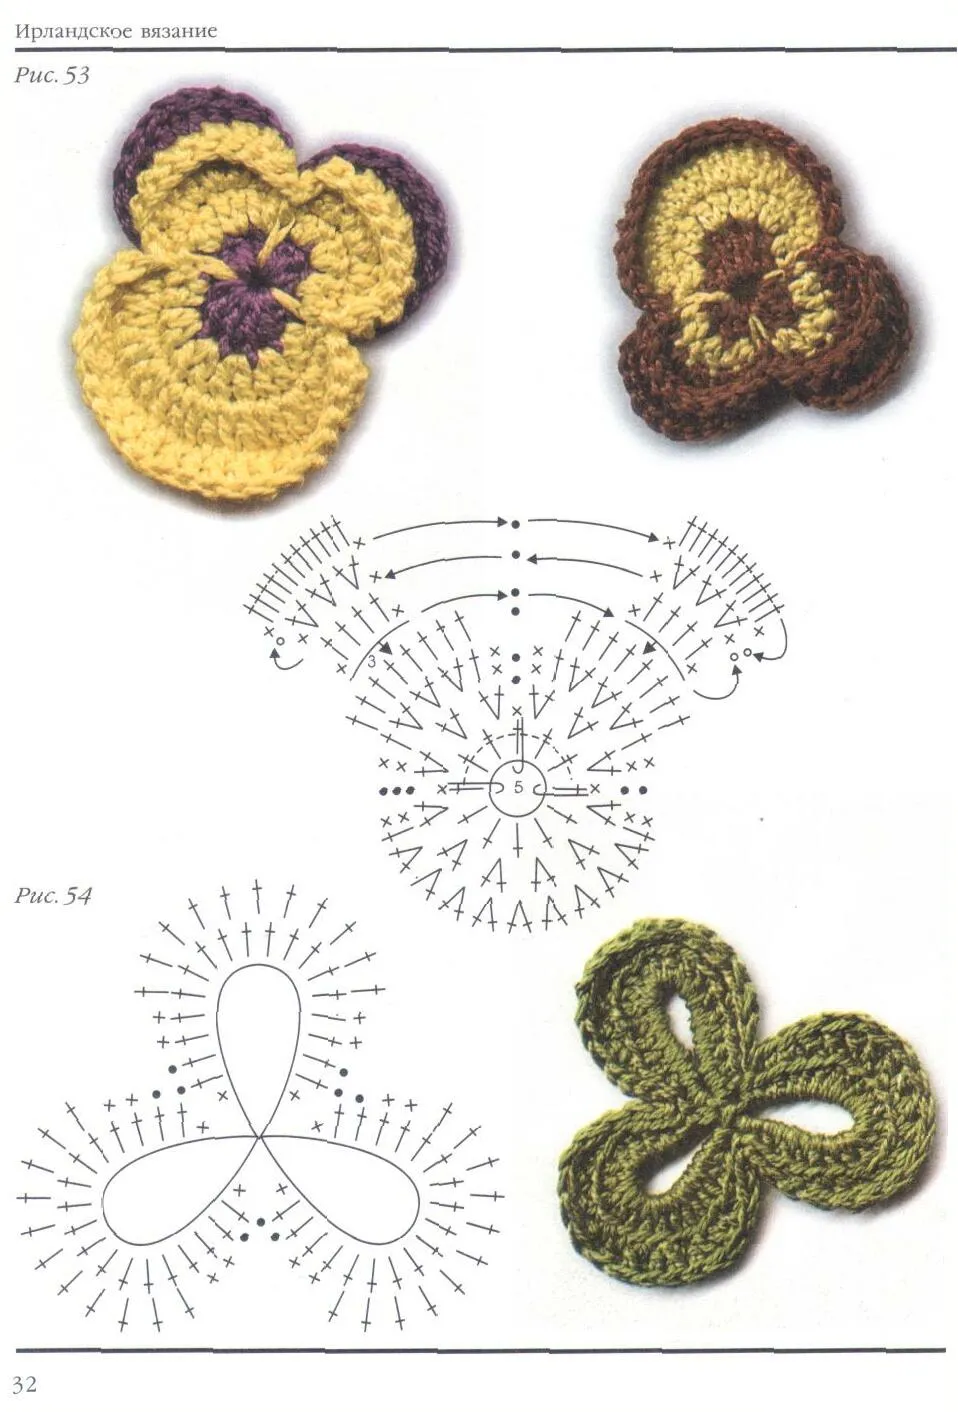 SOLO PUNTOS: Pensamiento y hoja tejidos en crochet